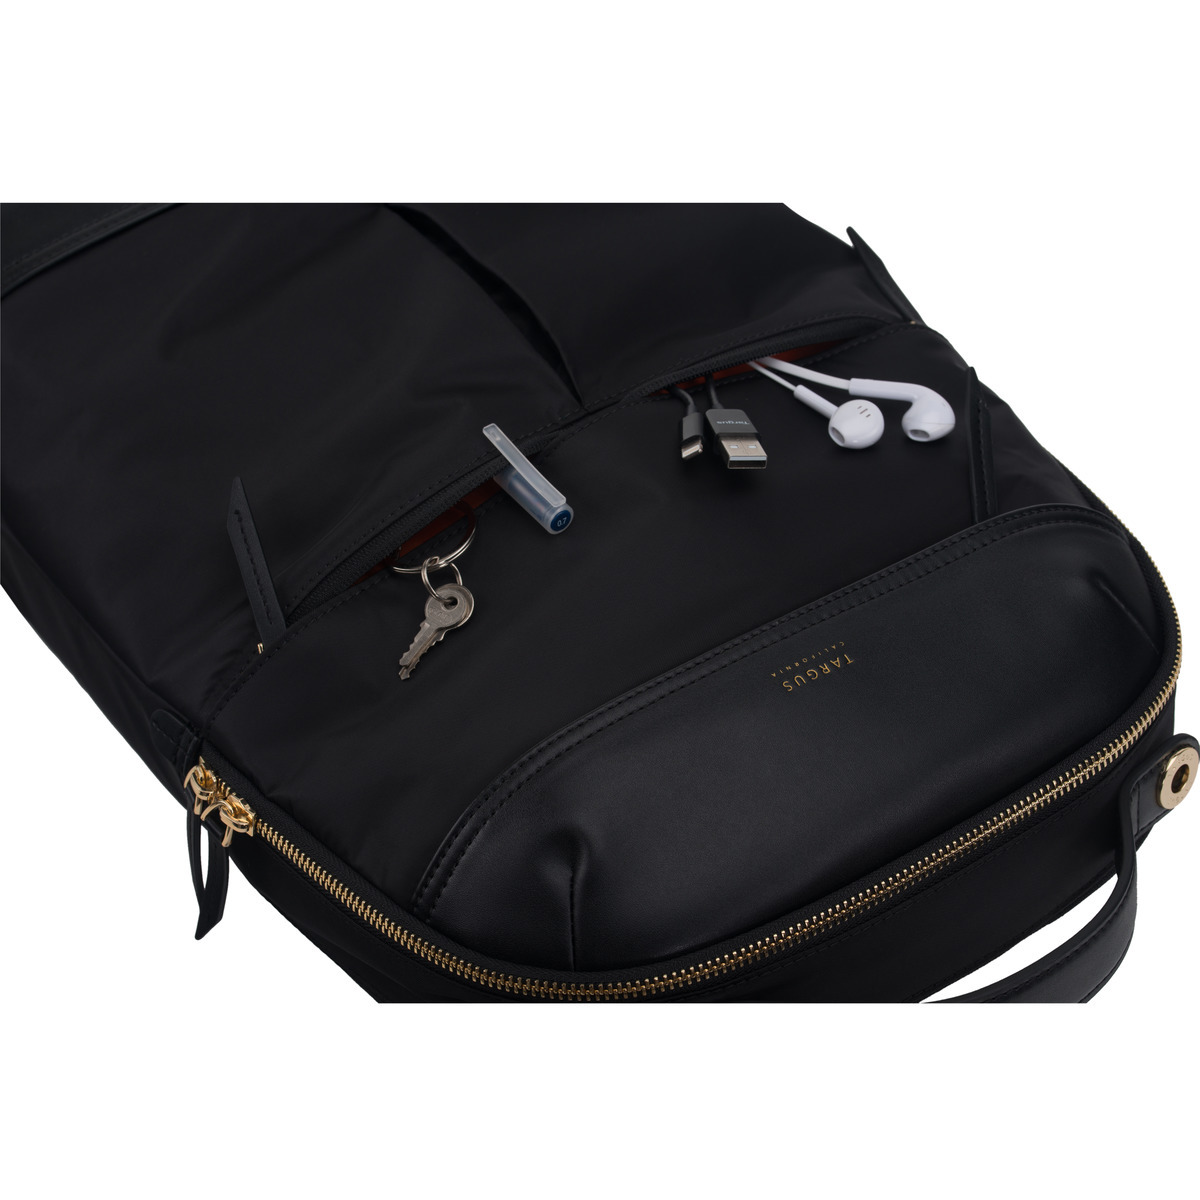 Targus 15" Newport Laptop Backpack, Black - TSB945BT - image 9 of 17